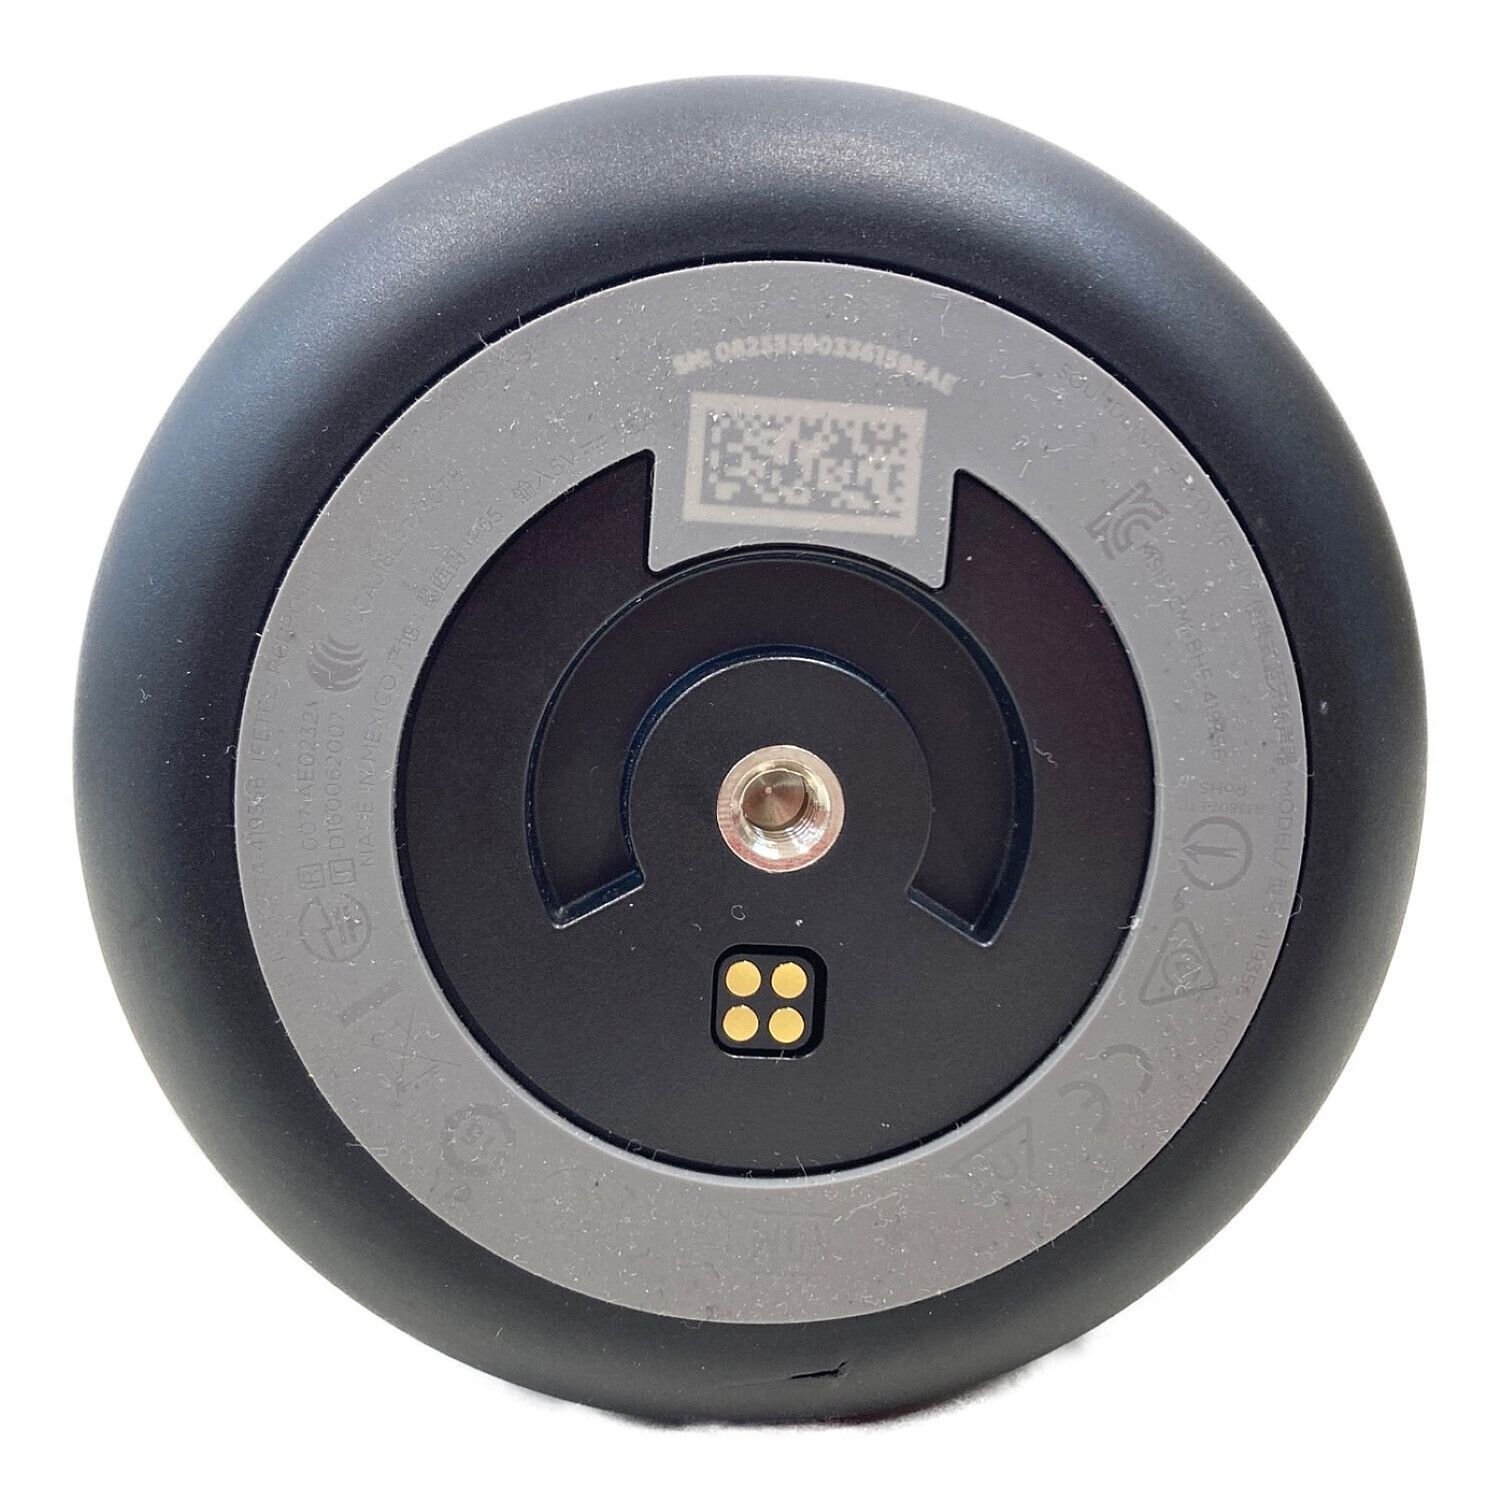 BOSE (ボーズ) 円筒型Bluetoothスピーカー IPX4 360度スピーカー